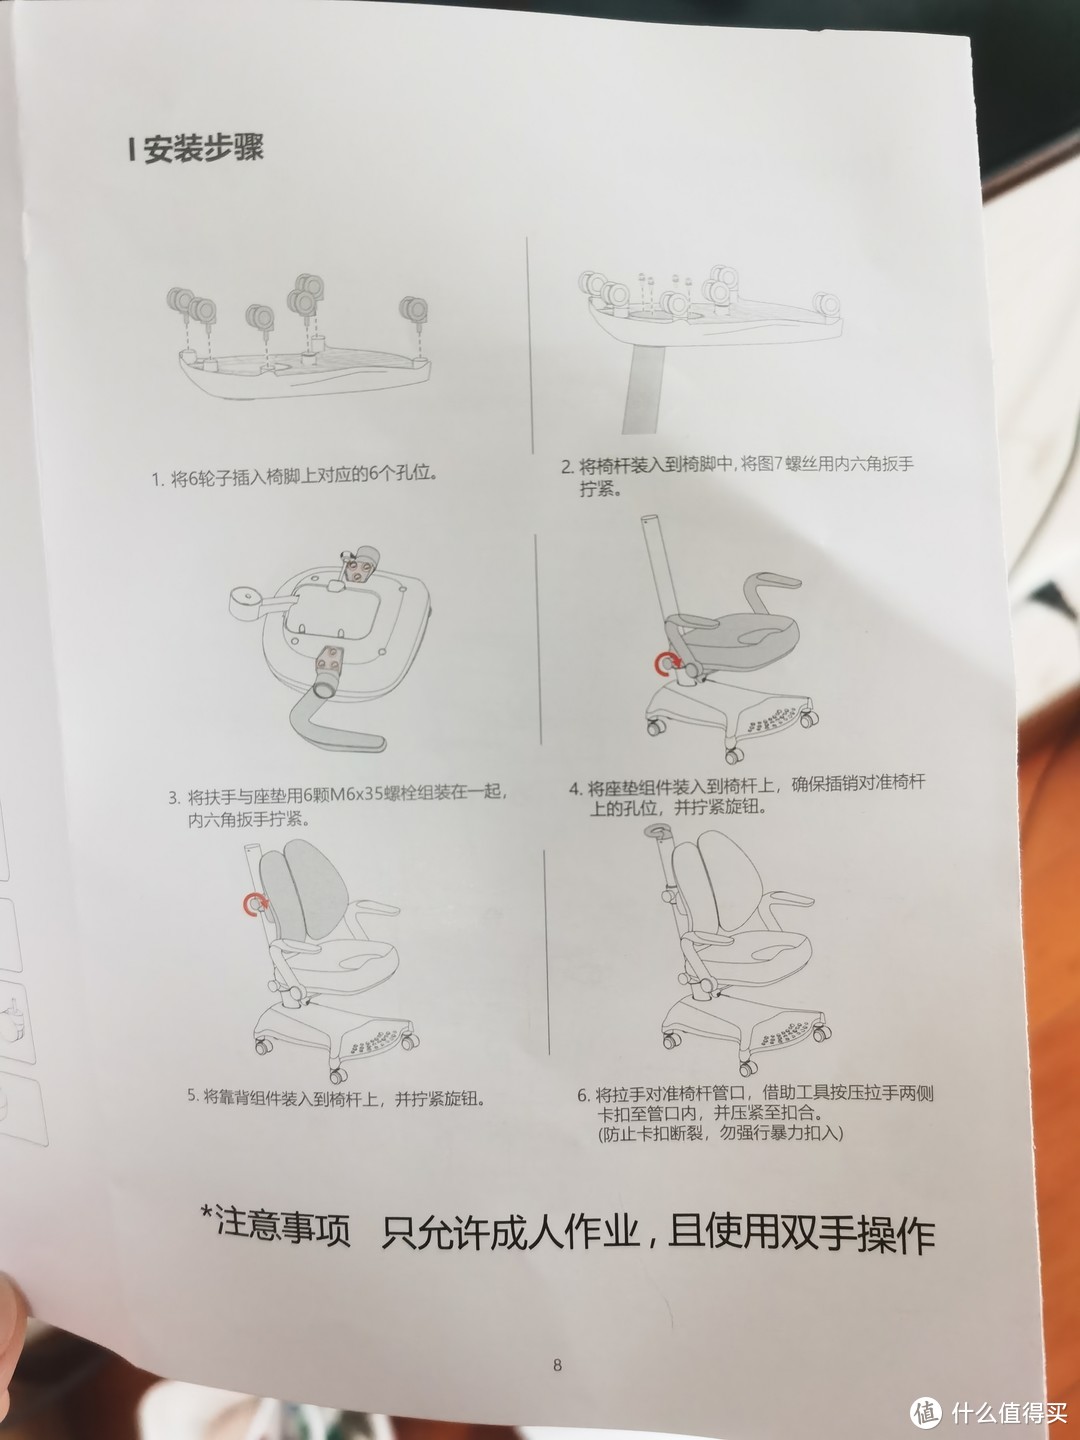 京东京造儿童学习椅开箱自组装晒物